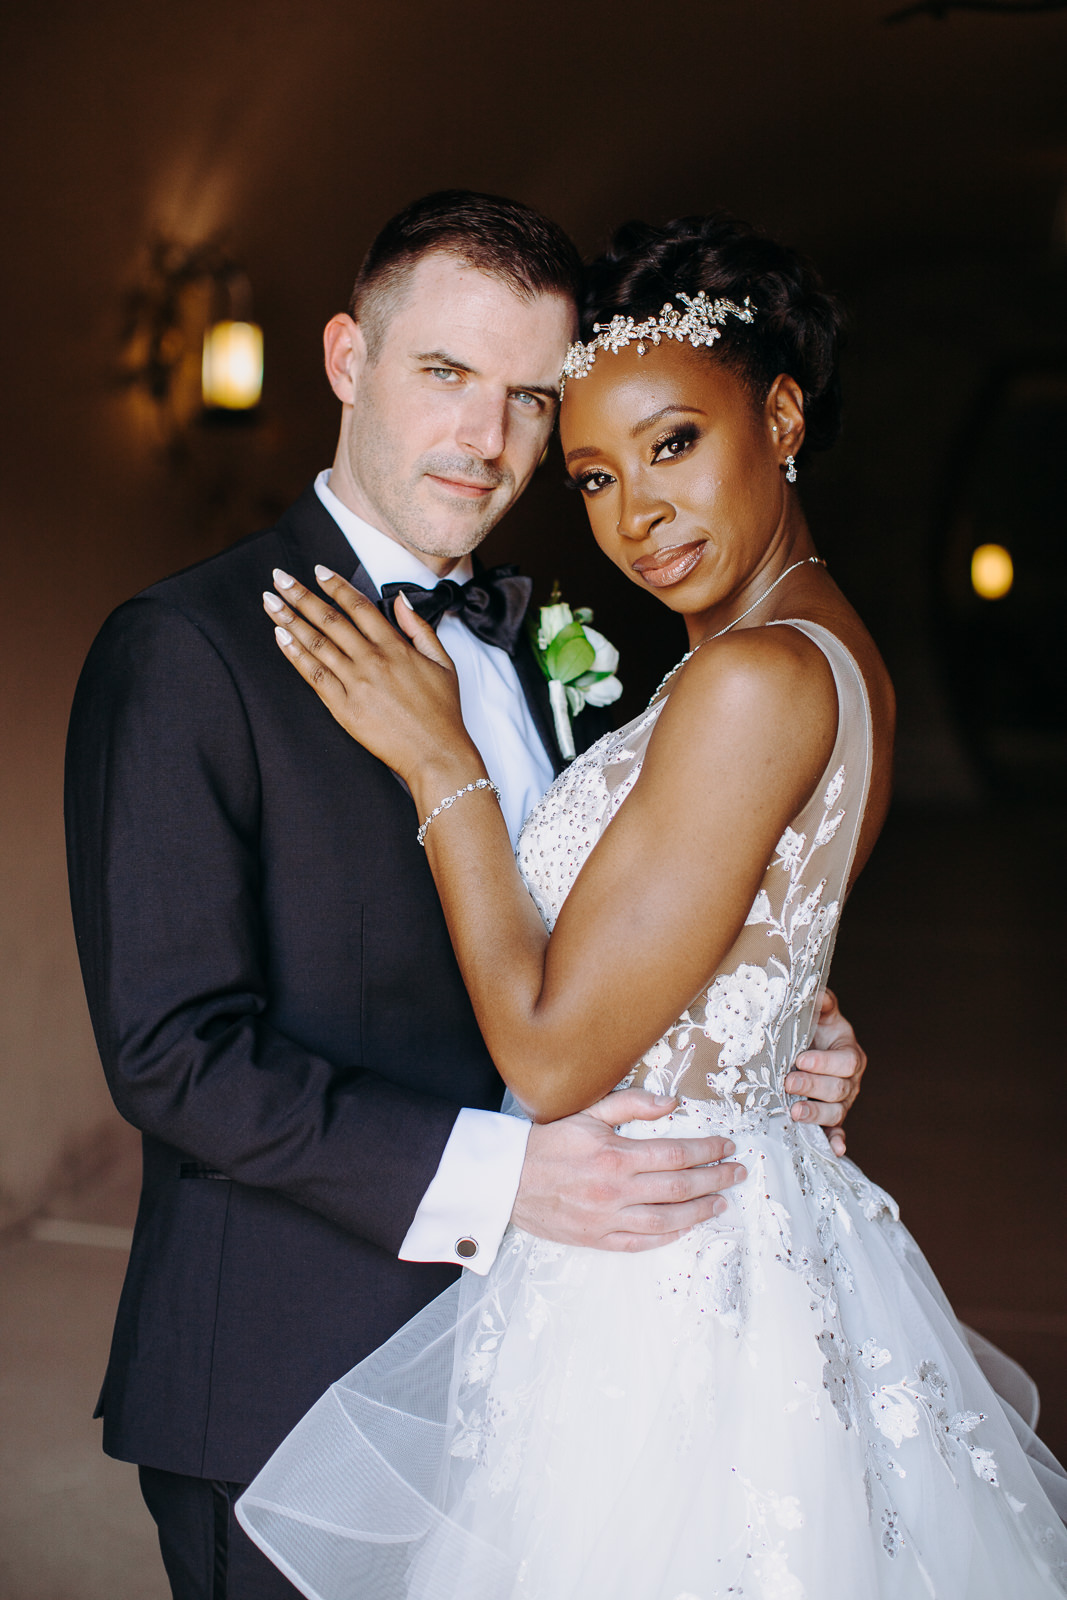 interracial bride and groom